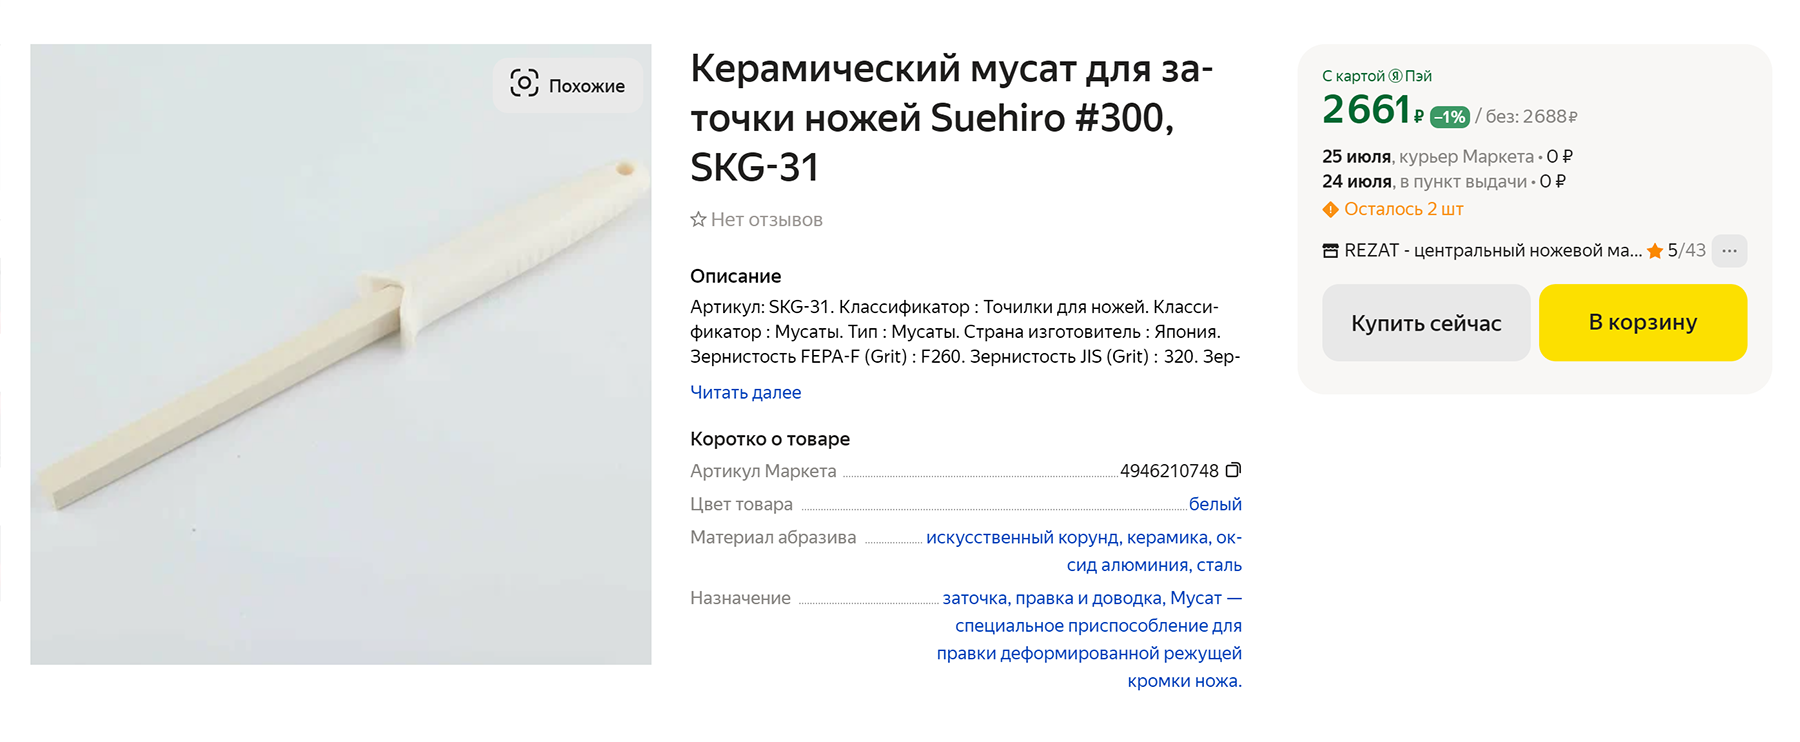 Четырехгранный мусат из керамики — около 2600 ₽. Источник: market.yandex.ru